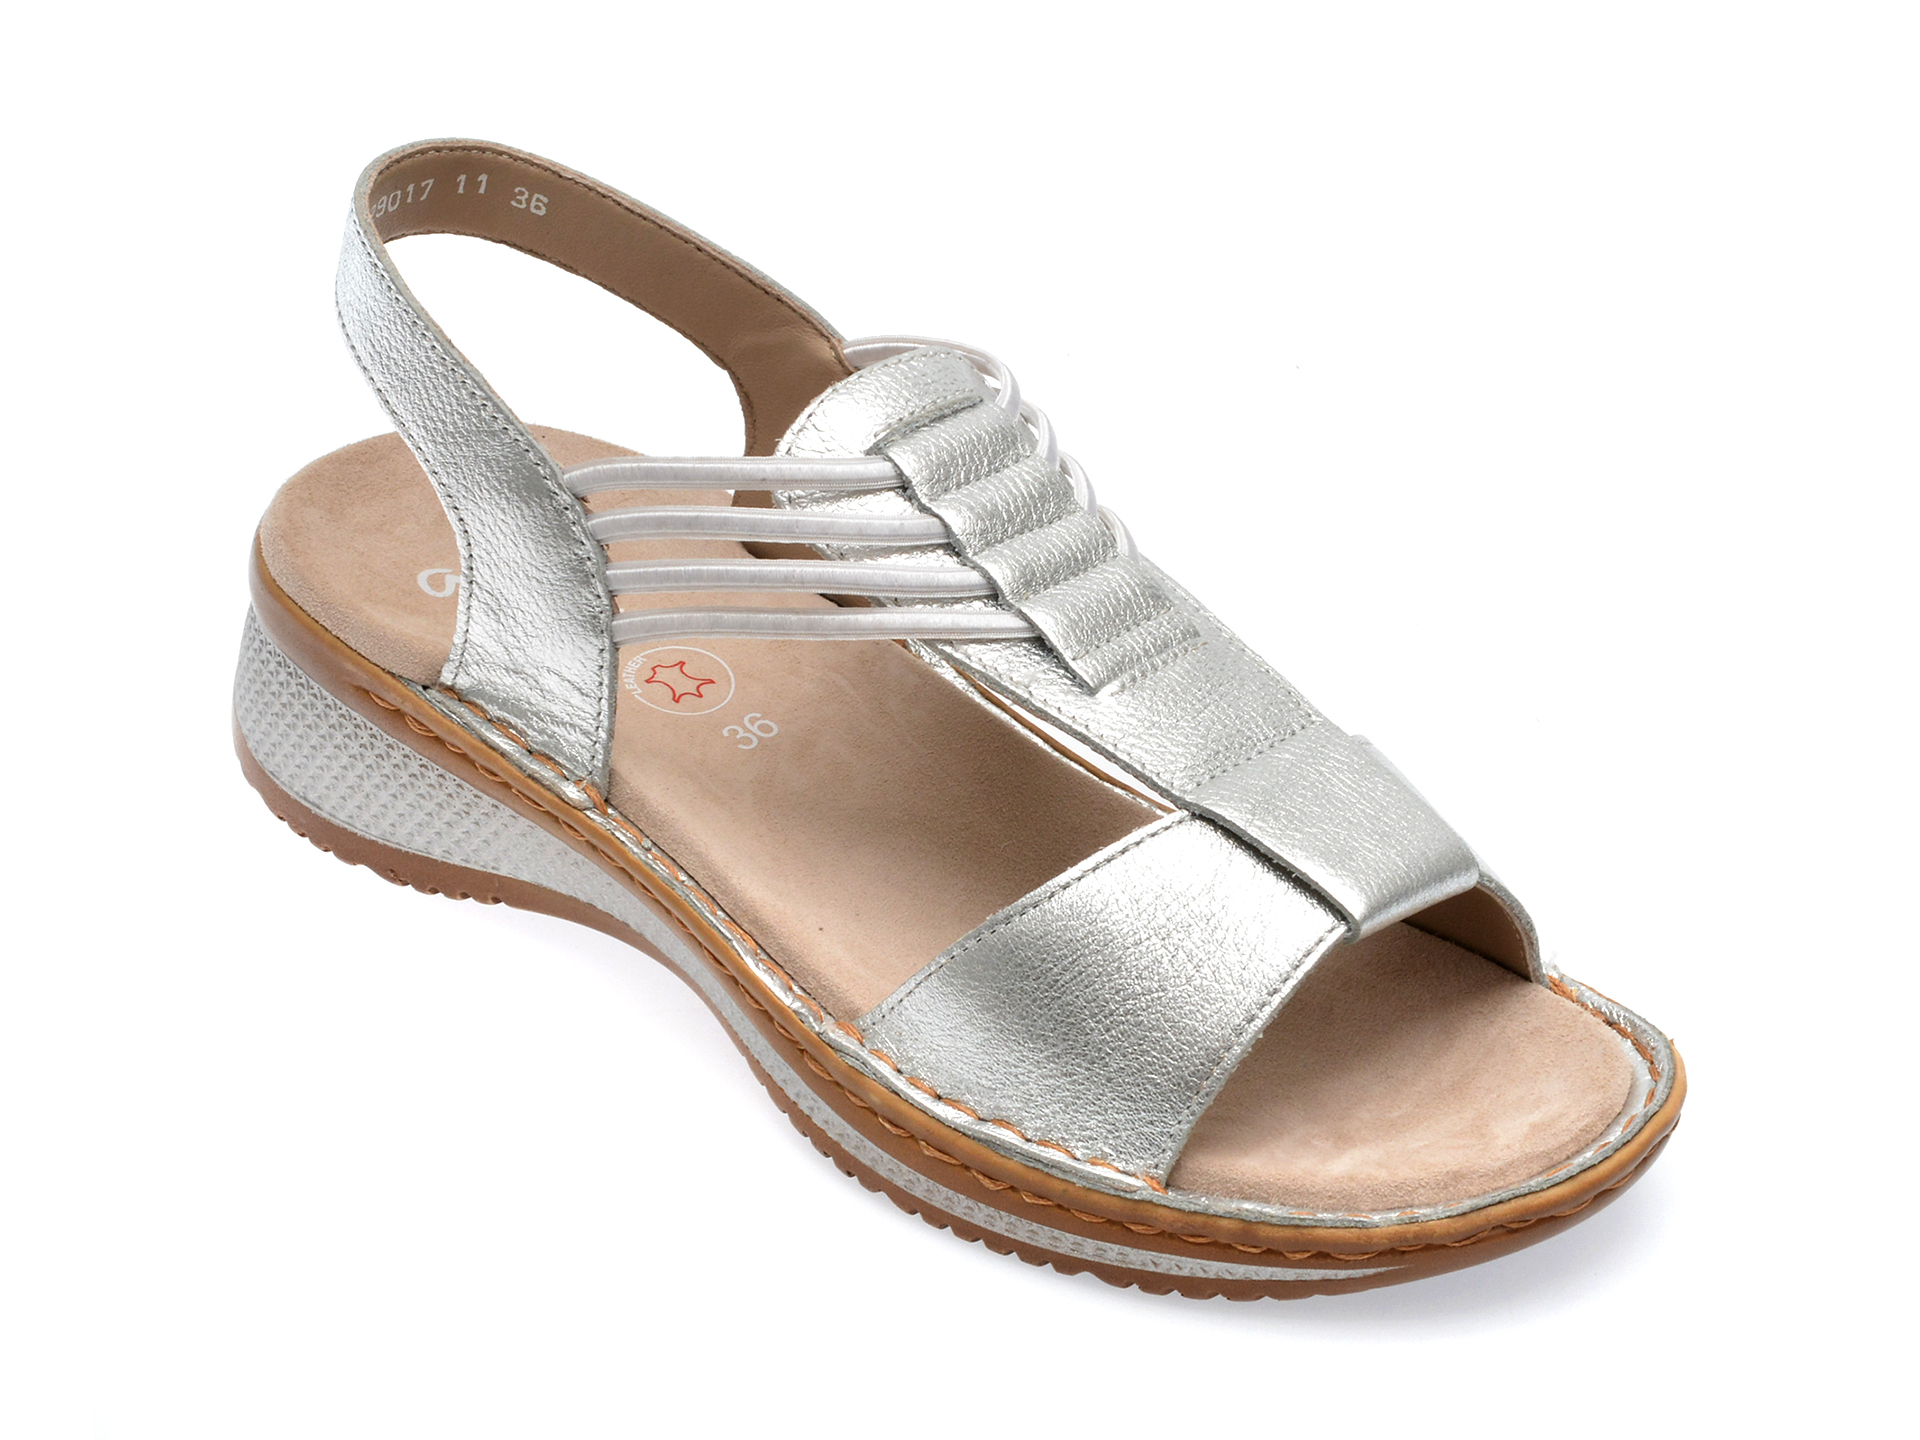 Sandale ARA argintii, 29017, din piele naturala femei 2023-11-28